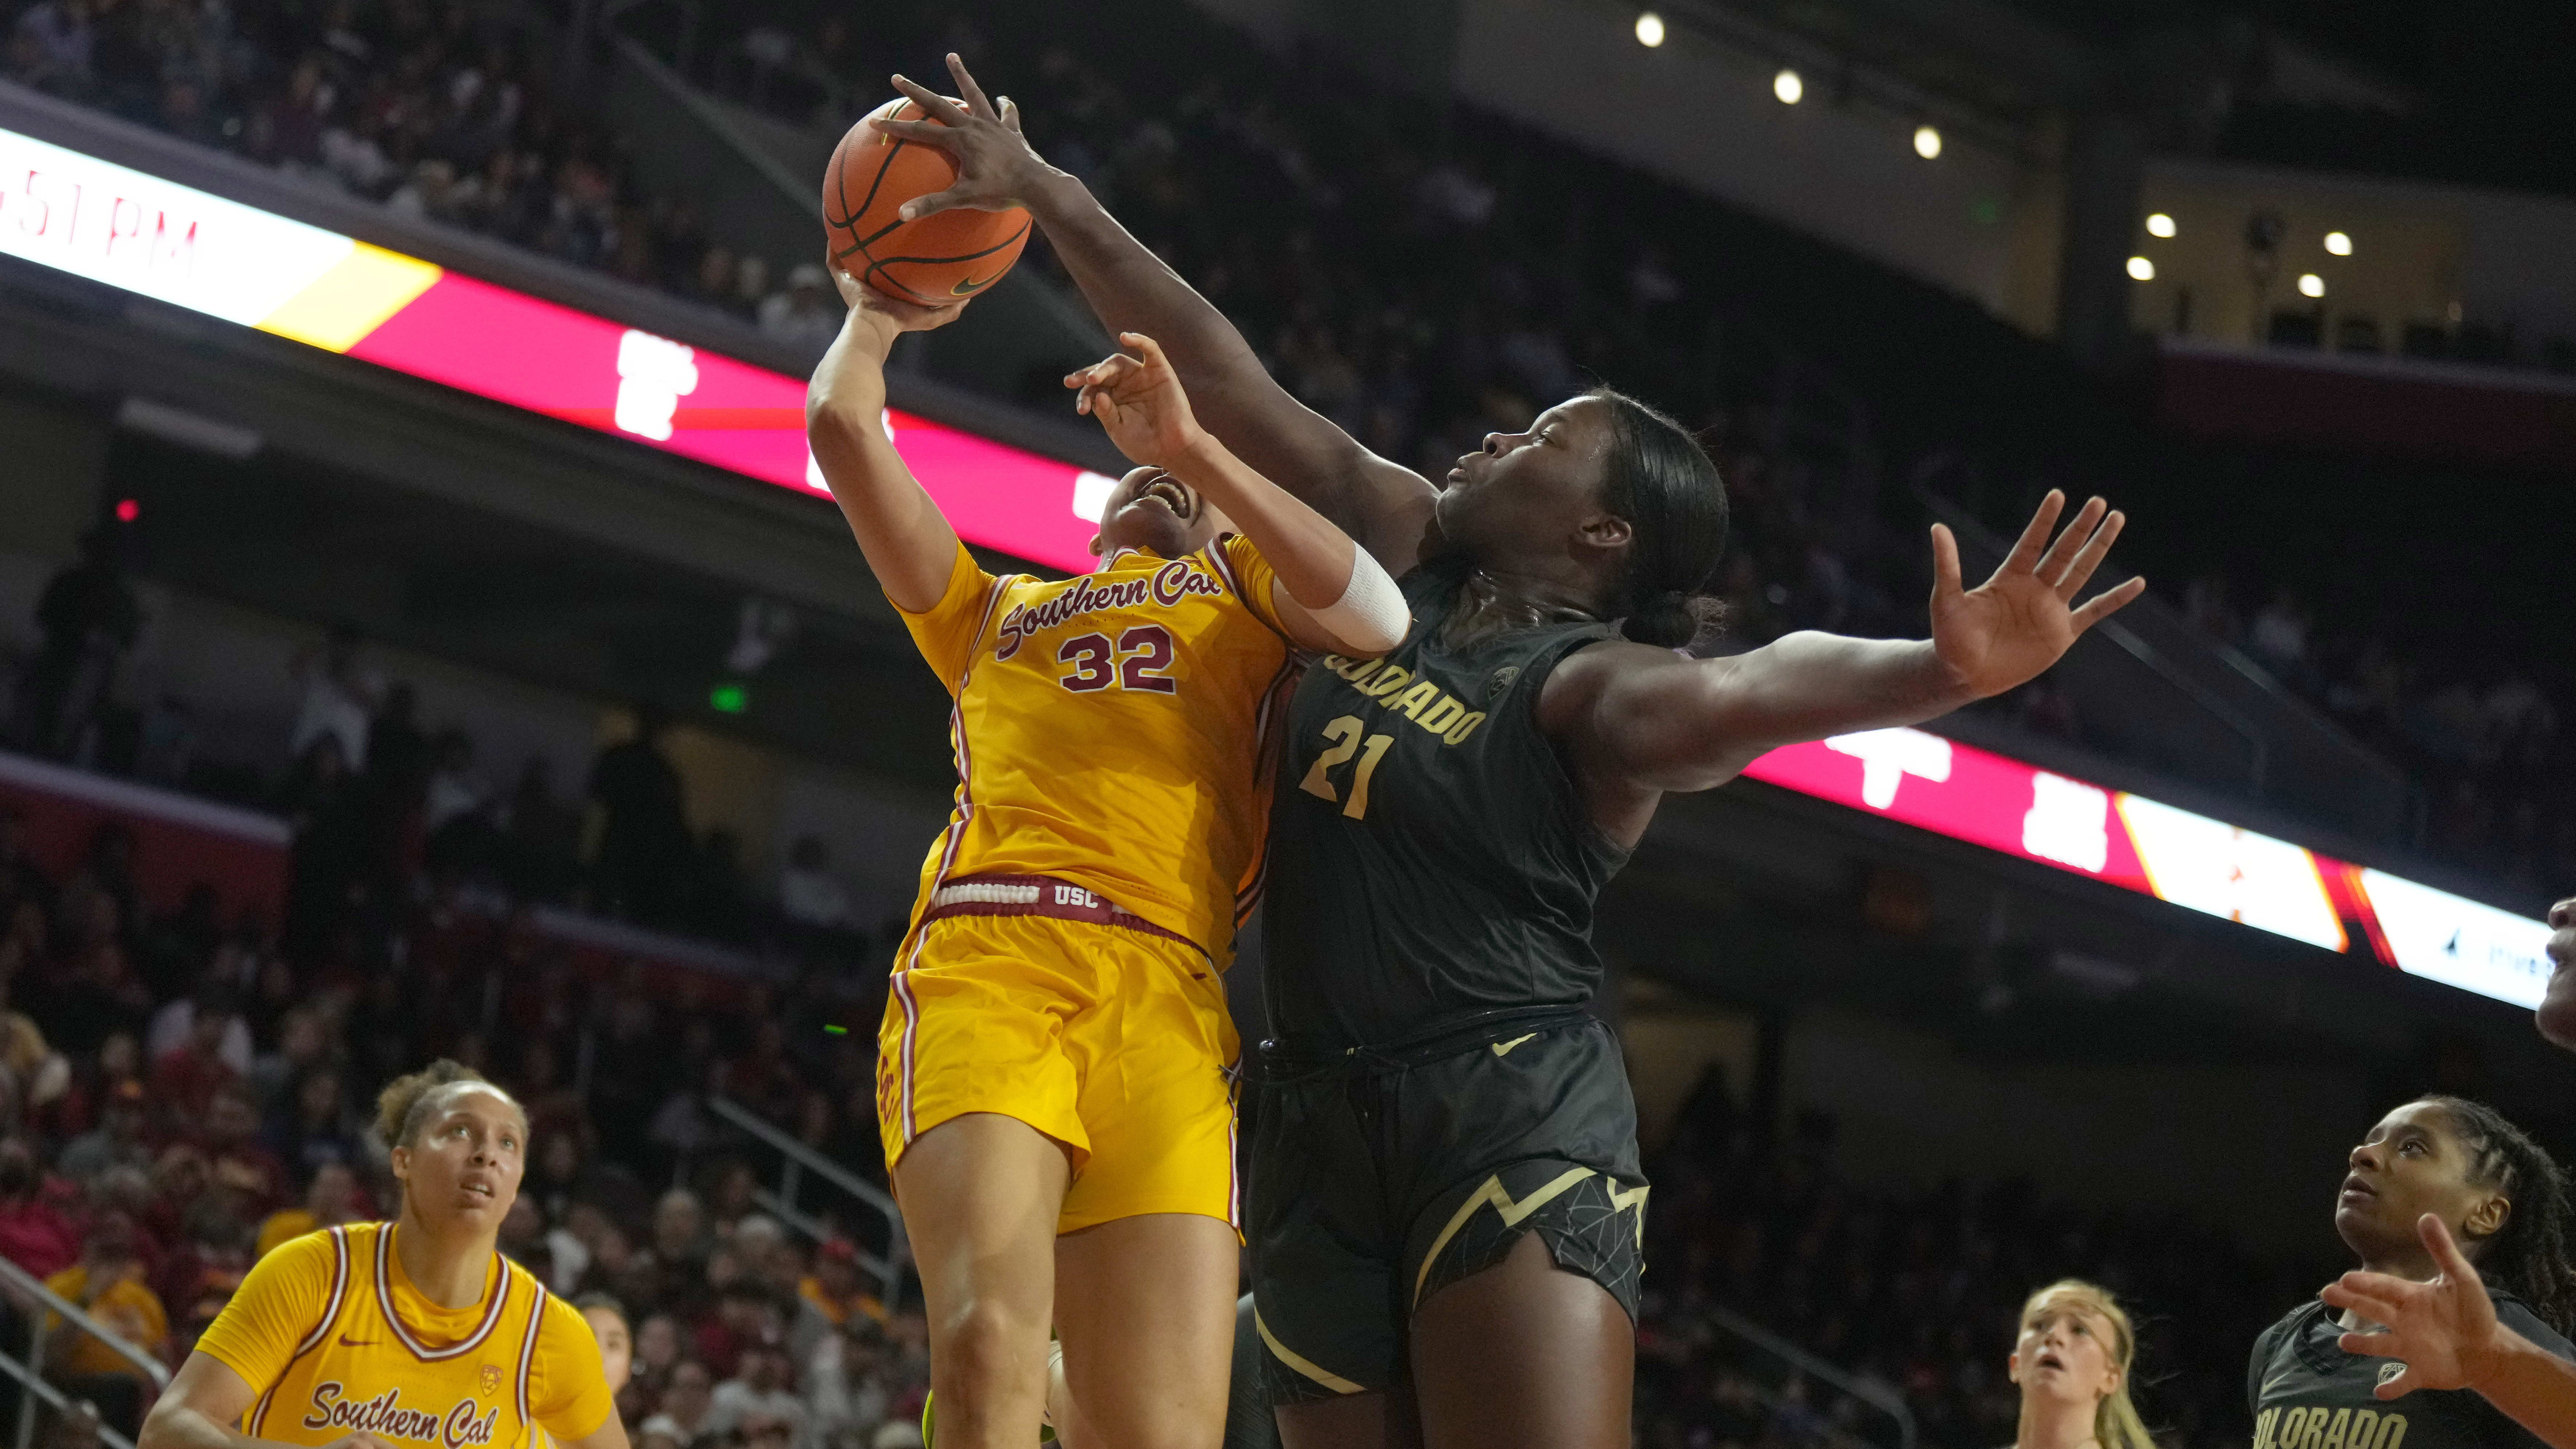 Colorado v Southern California - Women's Basketball